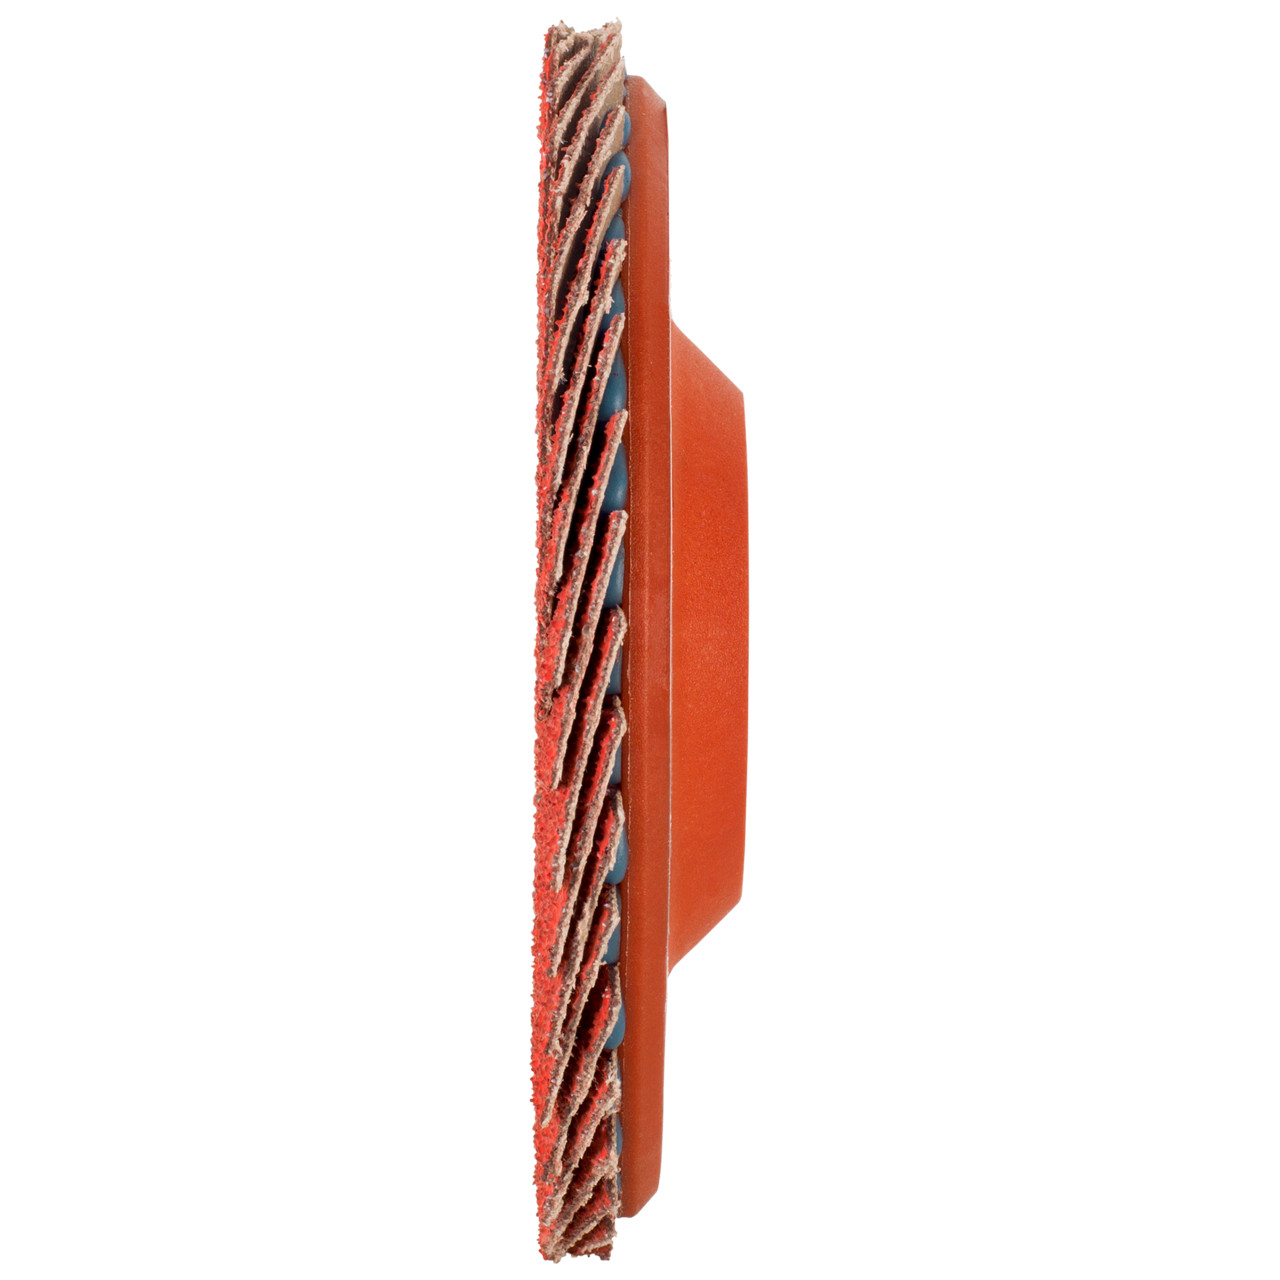 Tyrolit Rondelle éventail DxH 125x22,23 CERAMIC pour acier inoxydable, P60, forme : 28N - modèle droit (corps de support en plastique), art. 719847